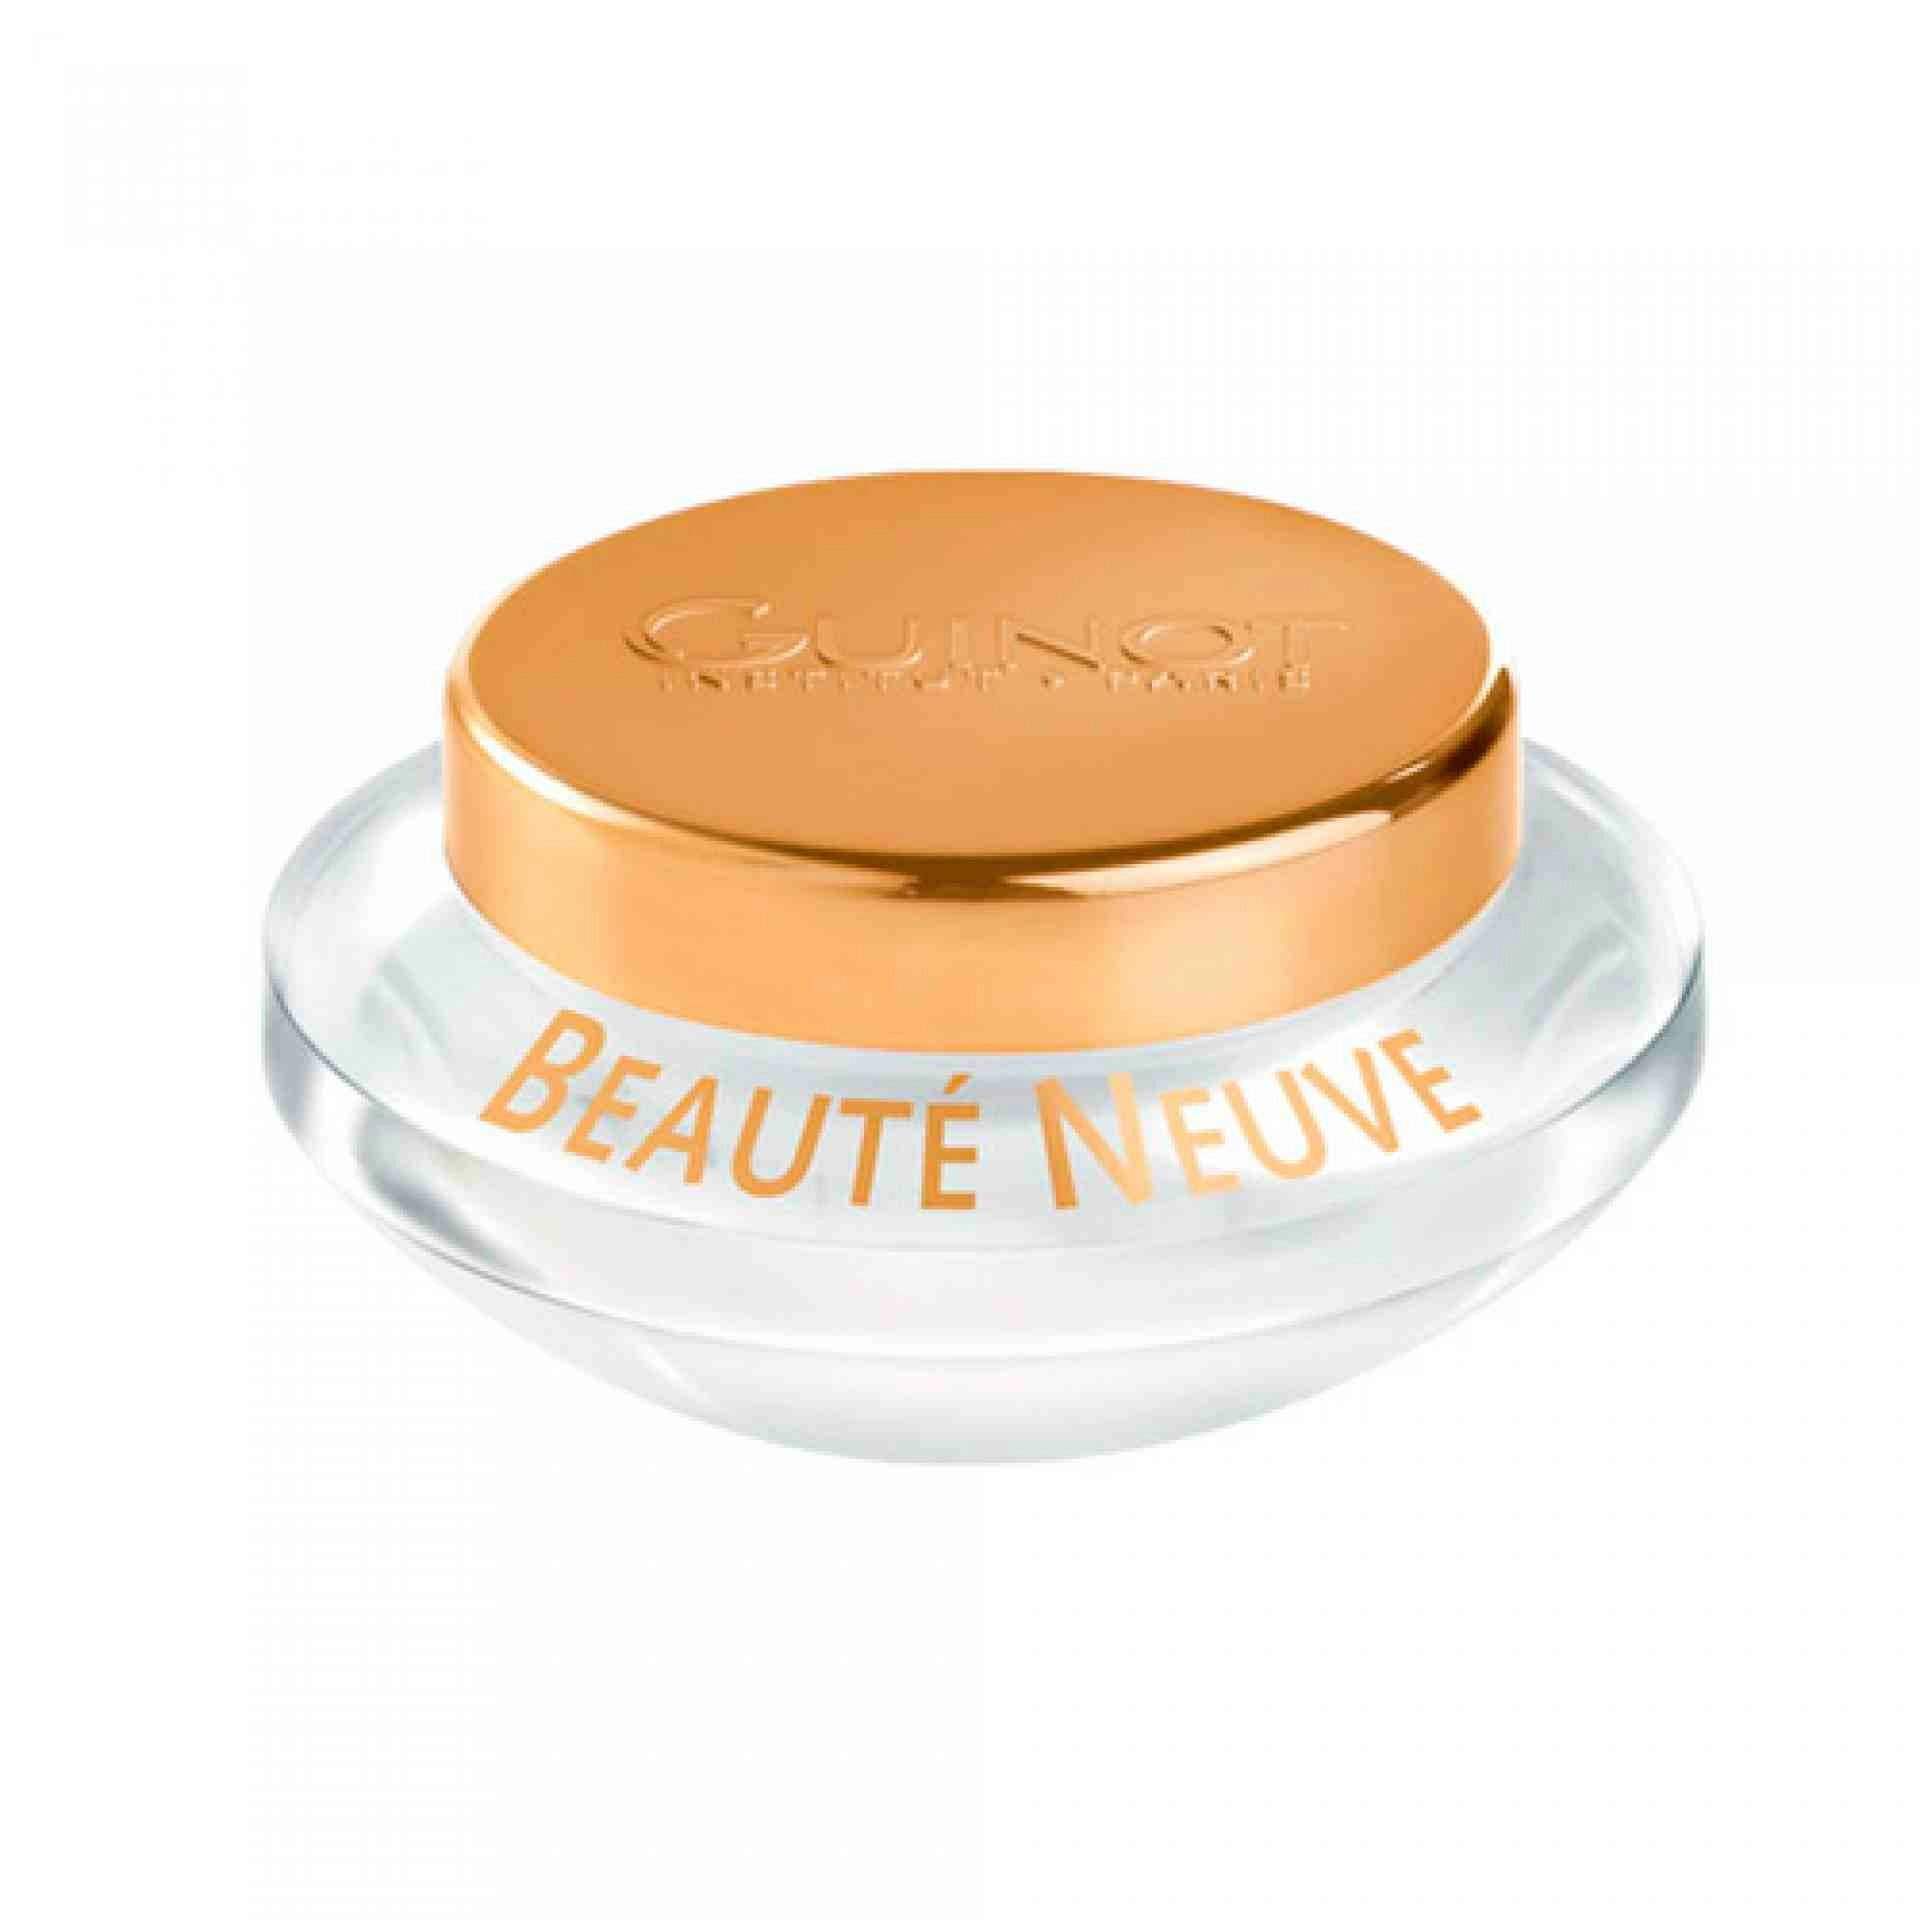 Crème Beauté Neuve | Crema Rejuvenecedora 50ml - Guinot ®